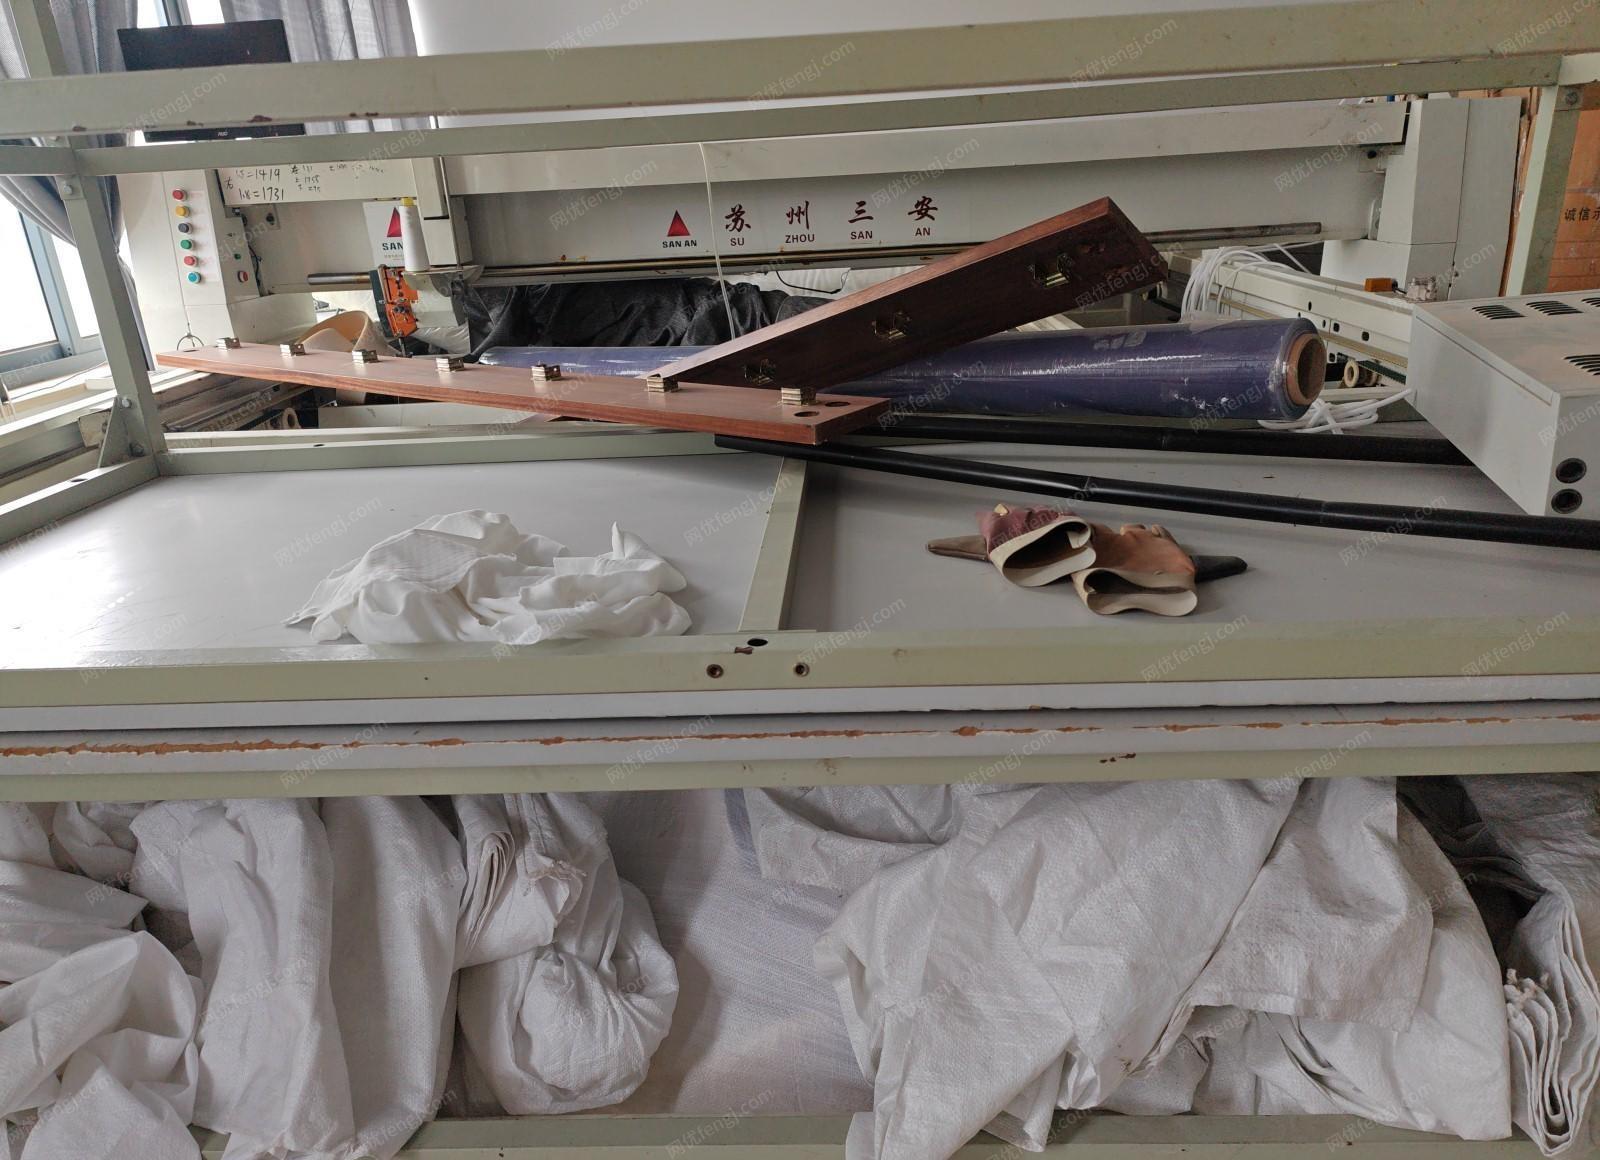 浙江杭州席梦思床垫加工厂经营不善，停业关门了。现在急需处理所有设备已经部分原材料